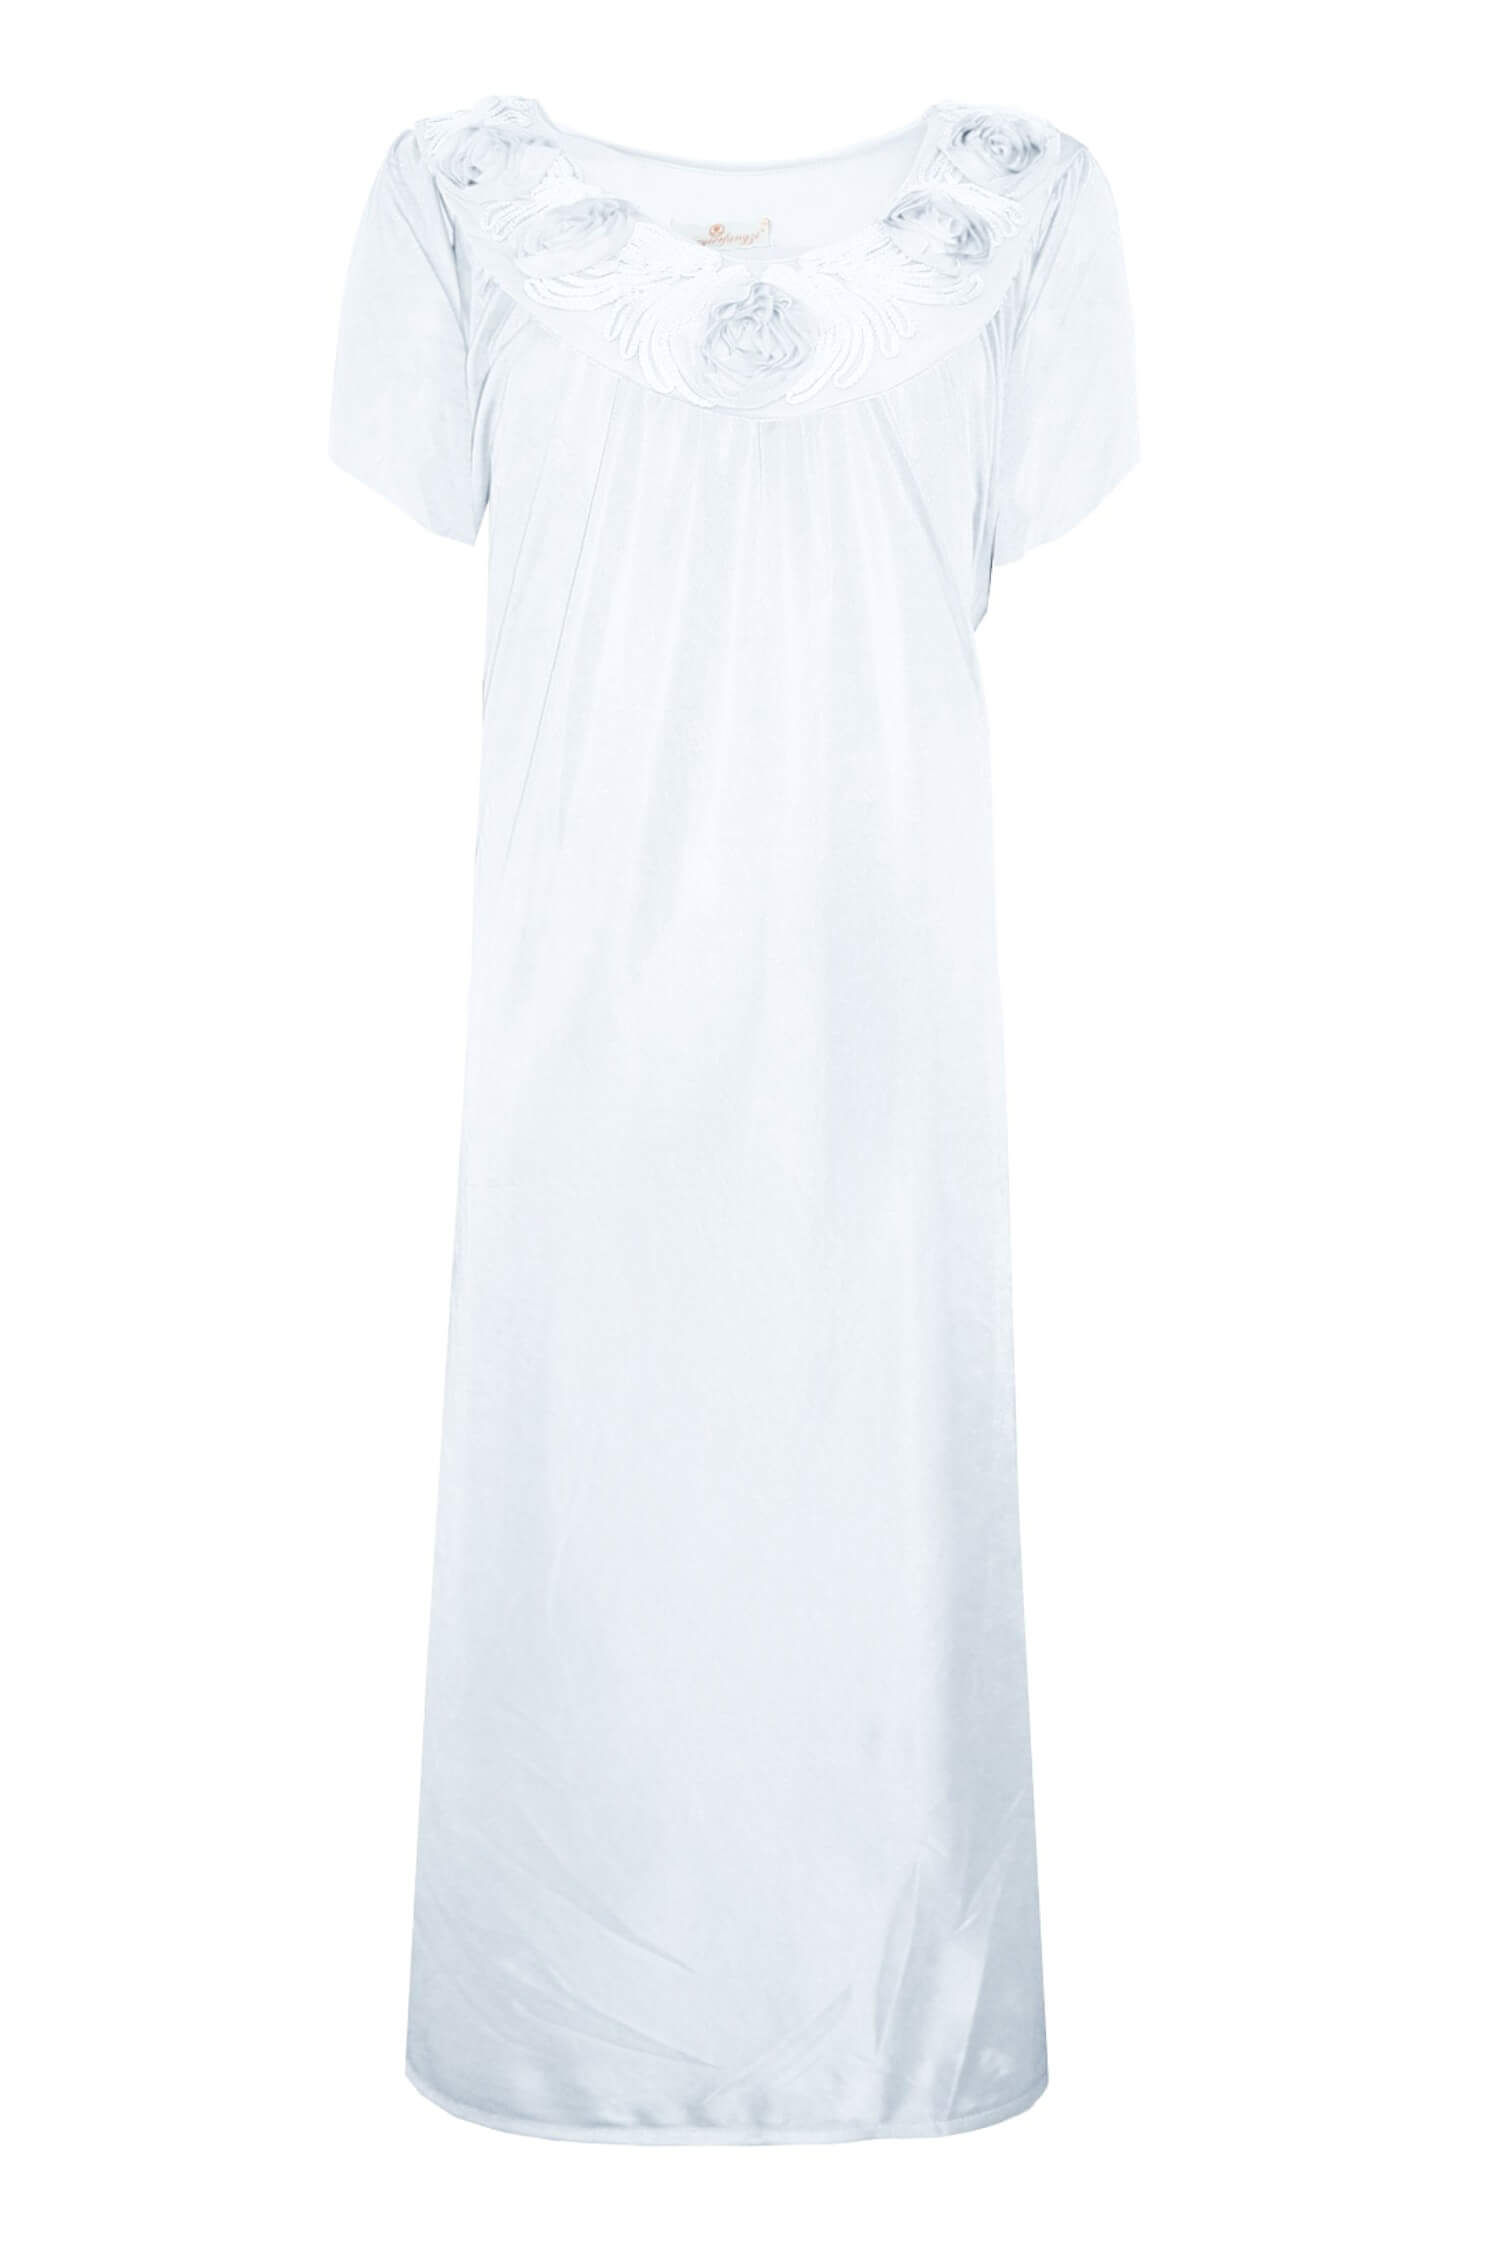 Hanička noční košilka s krátkým rukávem 1105 XXL bílá